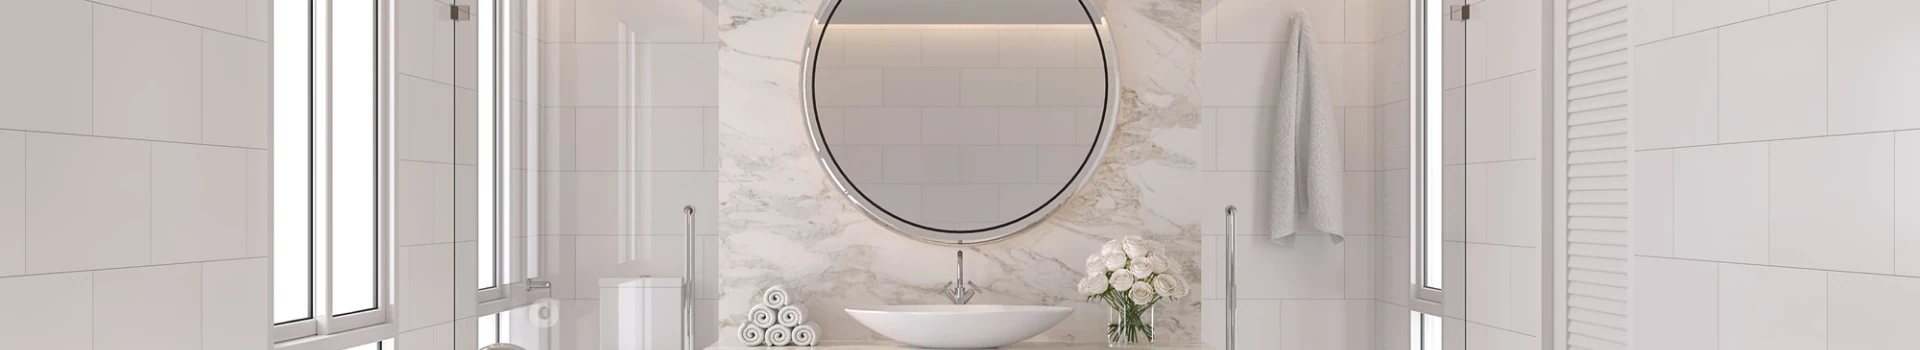 okrągłe lustro w łazience